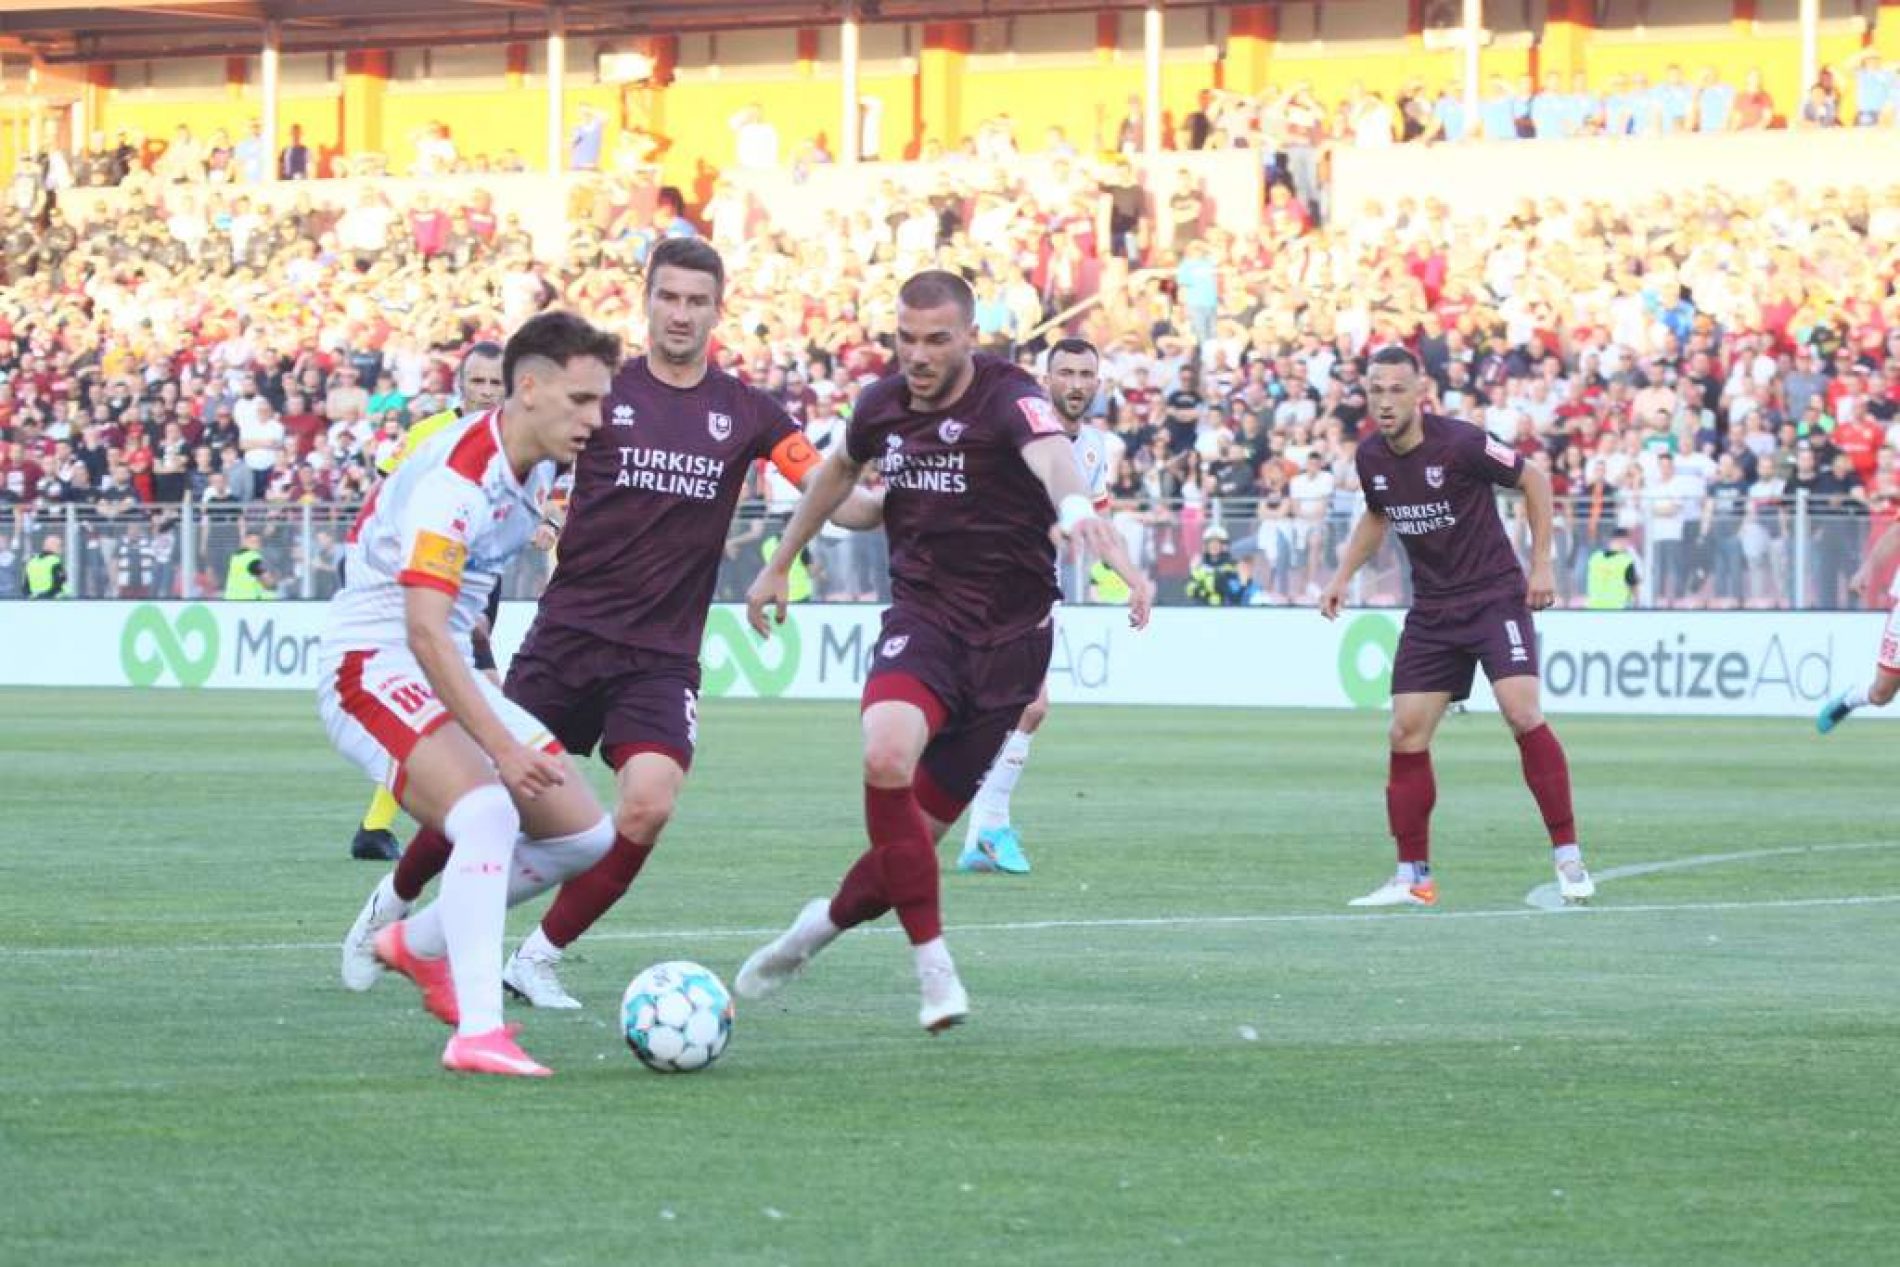 Mostarski klubovi igraju najbolji fudbal u državi – Veležu prvi osvojeni kup, Zrinjskom nova titula u PLBiH